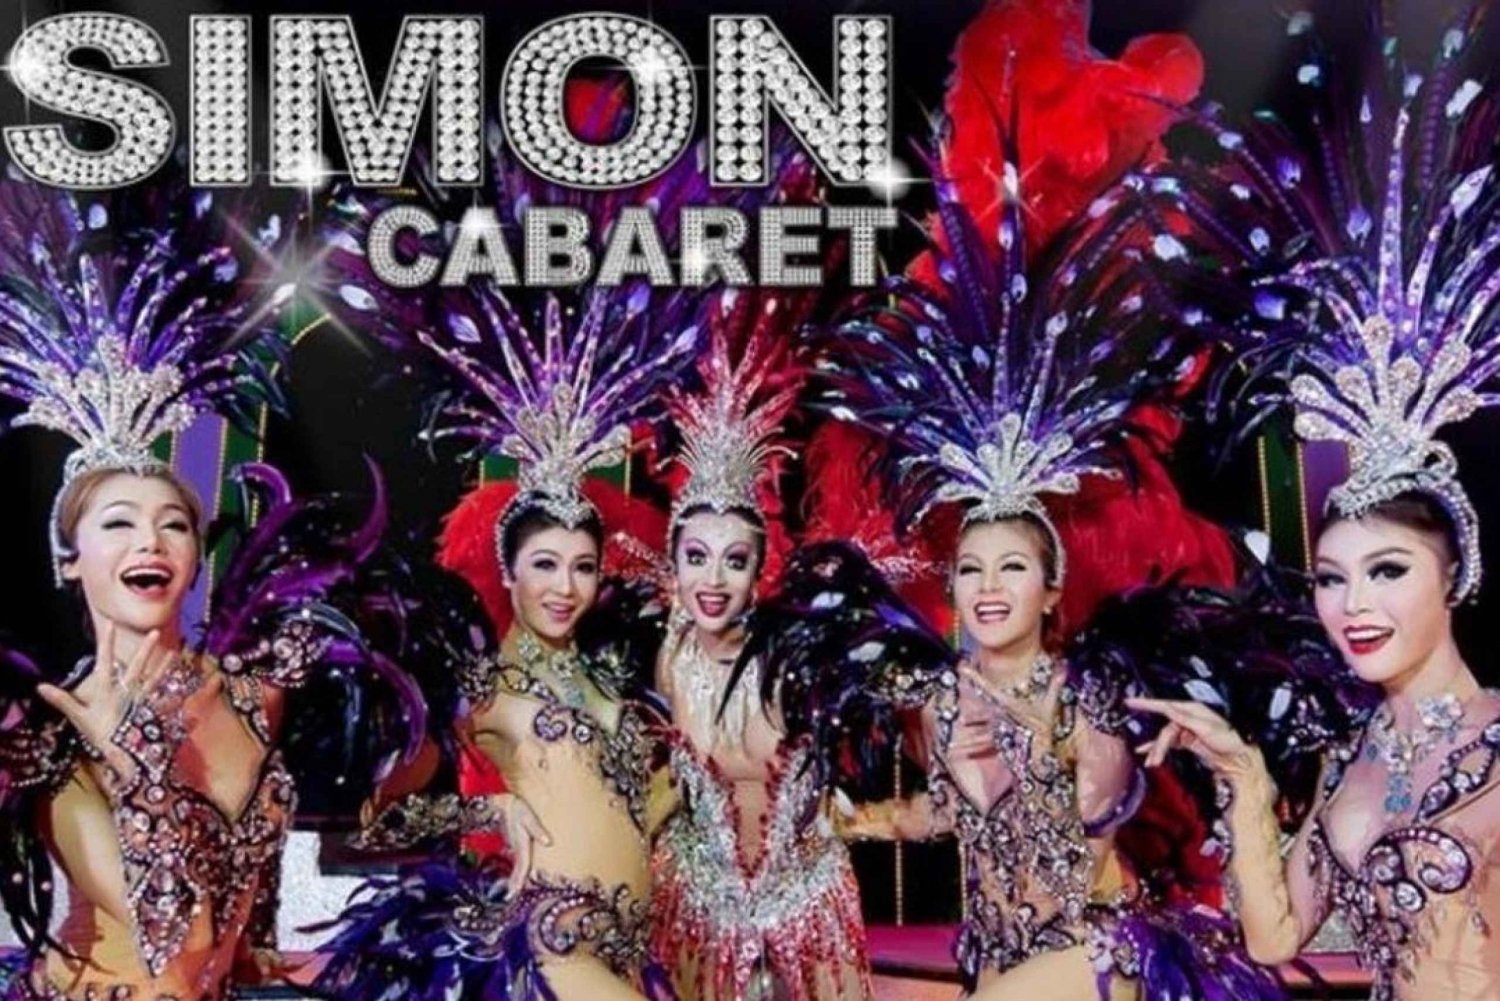 Phuket: Simon Cabaret Show Bilhete de entrada com transporte